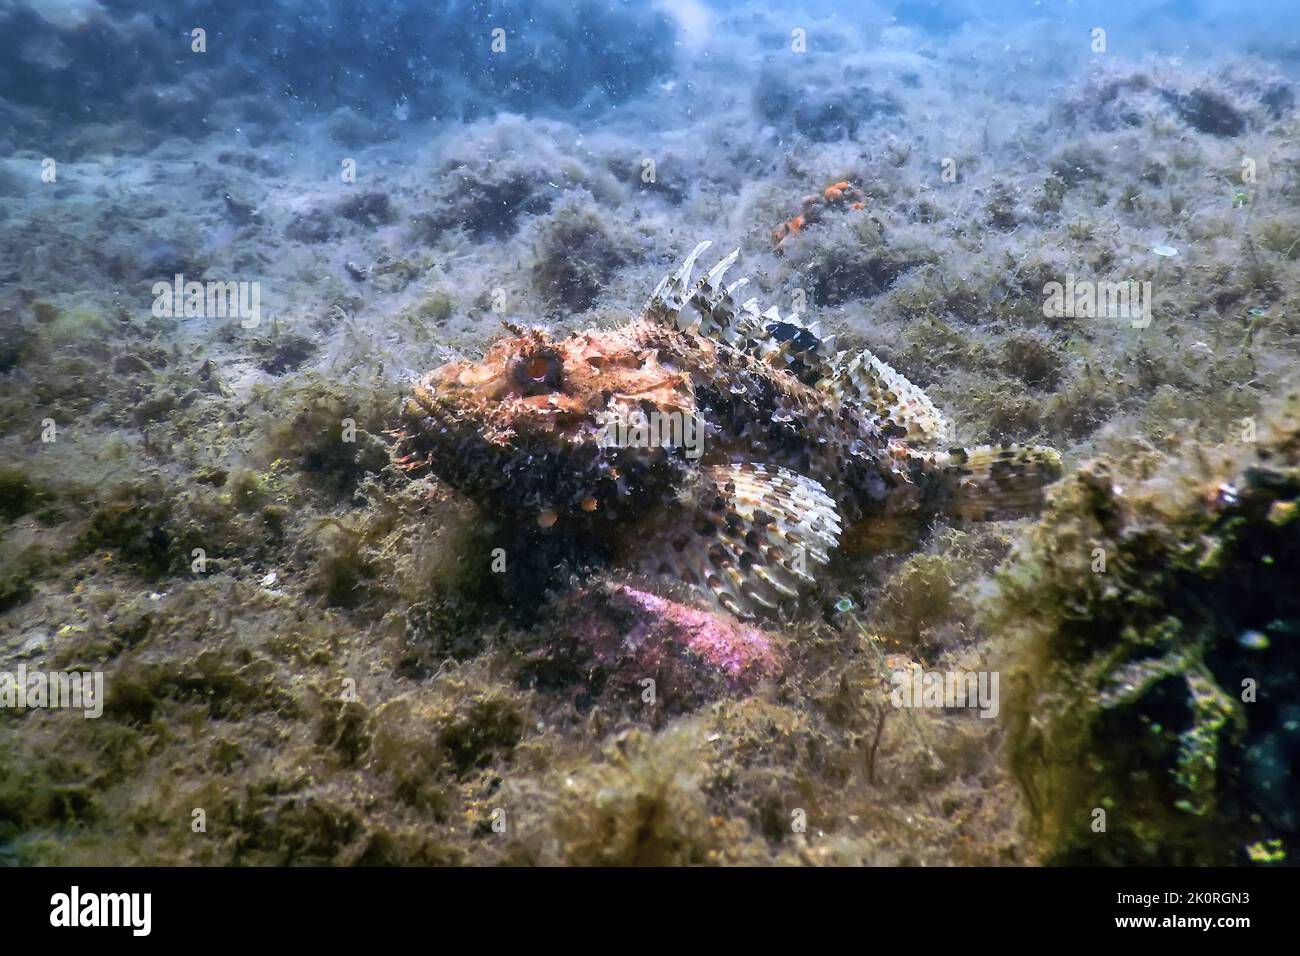 Scorpion Fish Underwater Underwater Life. Scorpionfish (Scorpaena notata) Wildlife Stock Photo